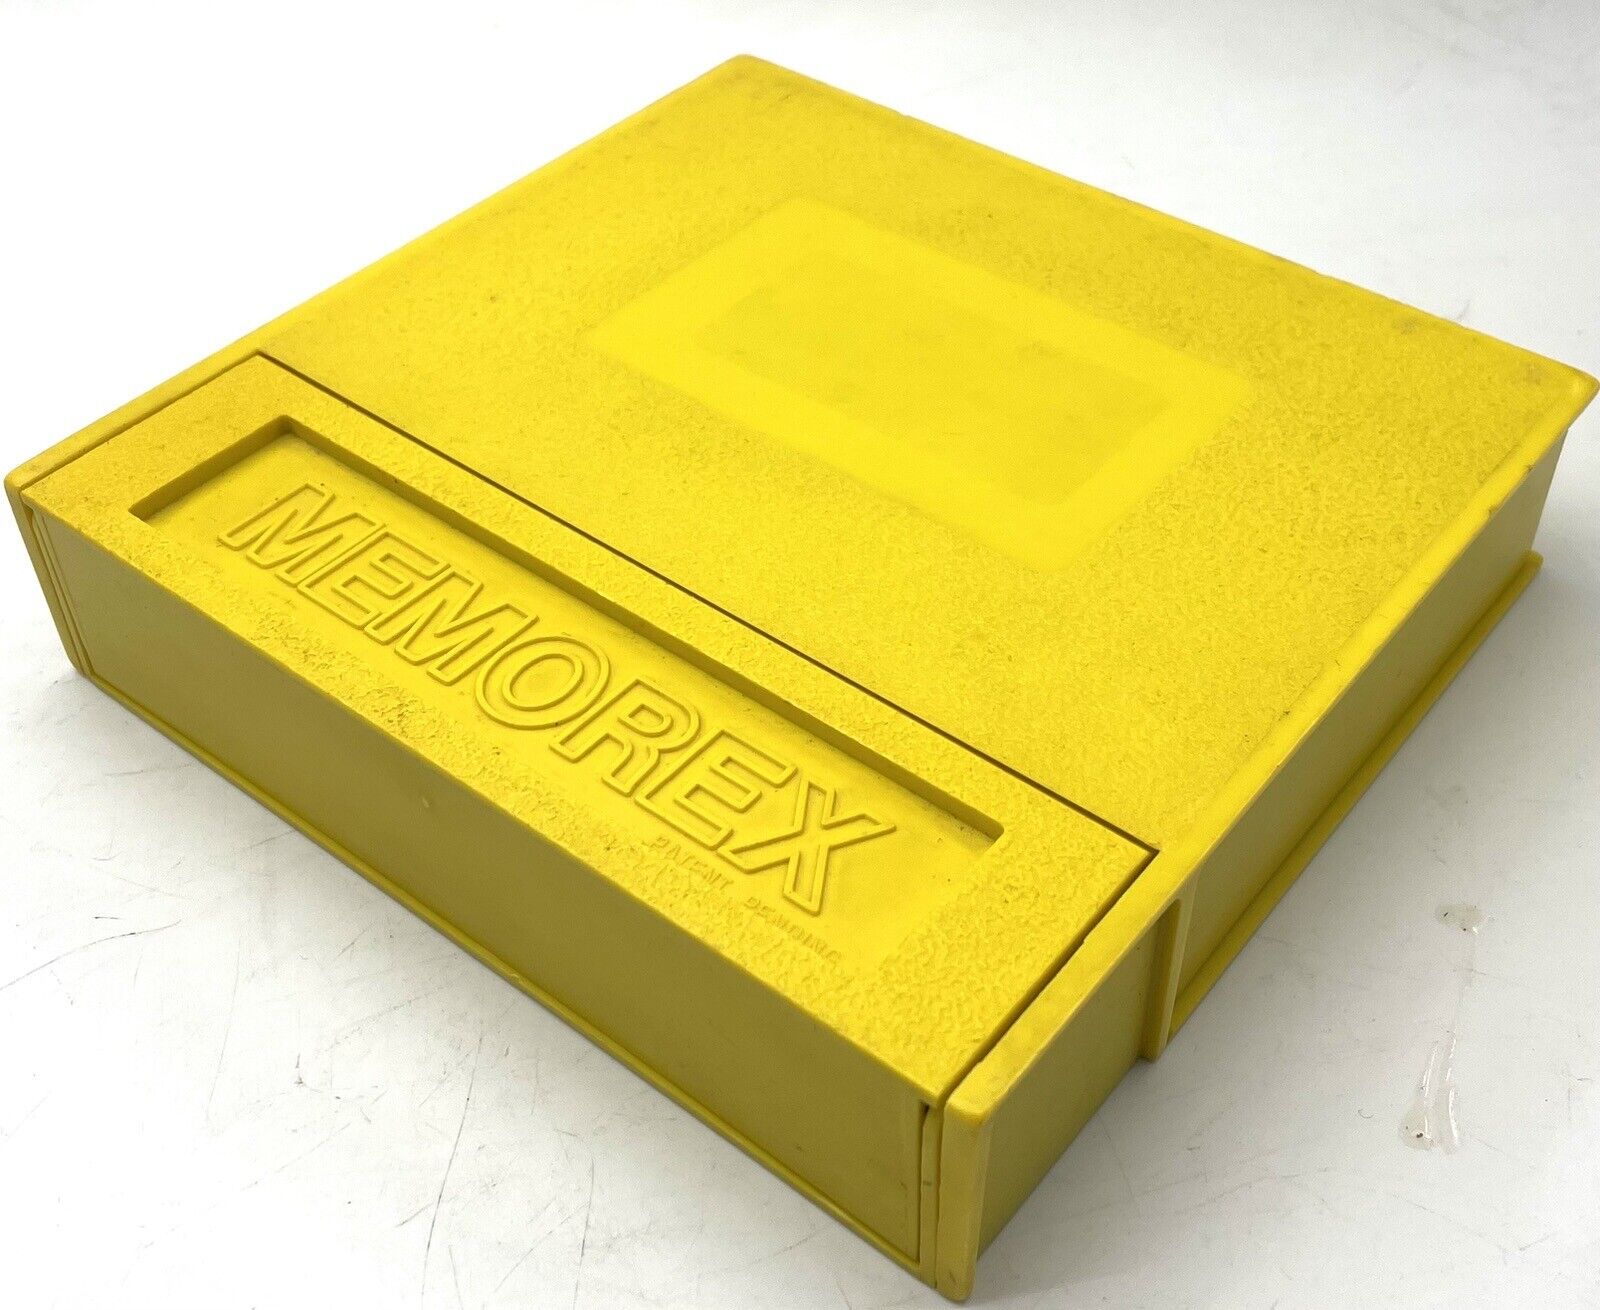 Rare Vintage Memorex 5.25 Inch Floppy Disk Hinged Storage Case Heavy Duty